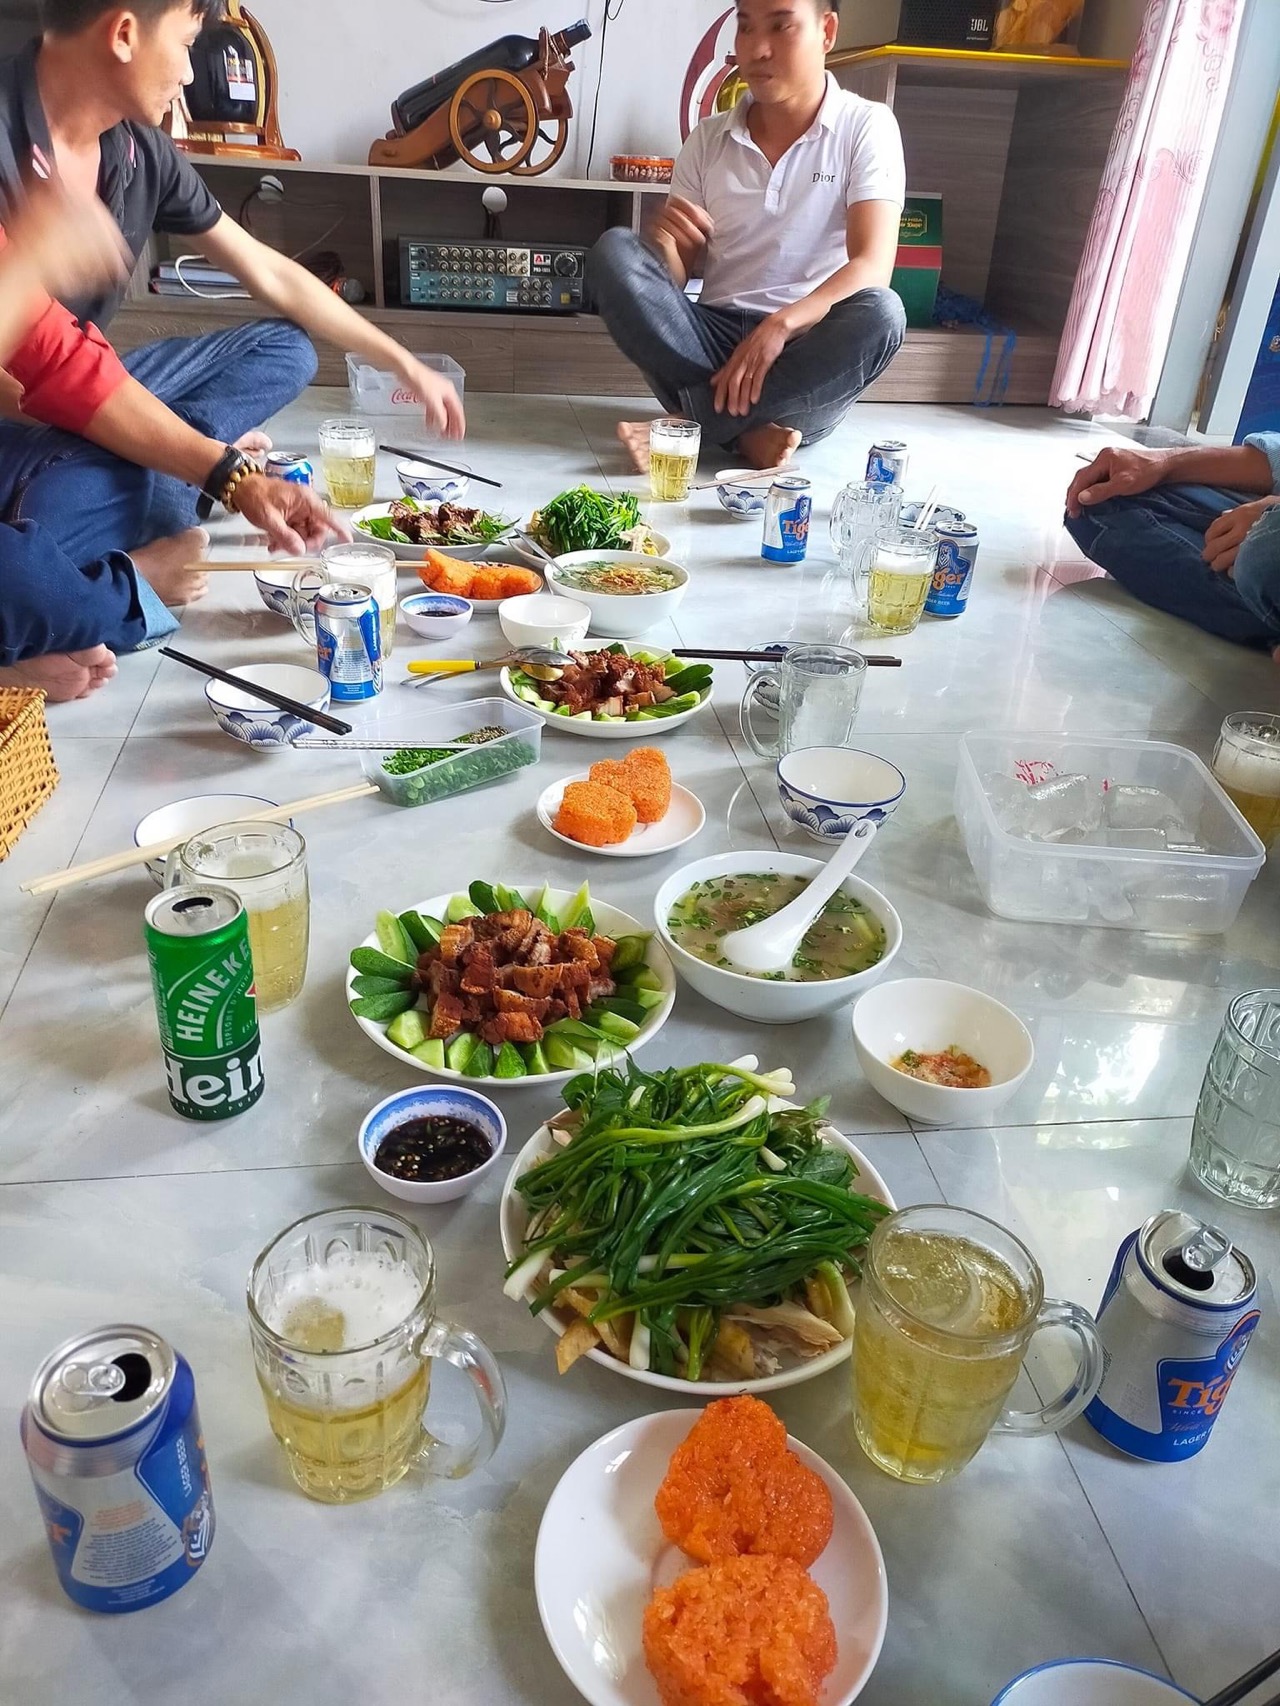 #buatiec đầu năm cùng bạn bè và gia đình 🏠 #hocmon #Vietnam 